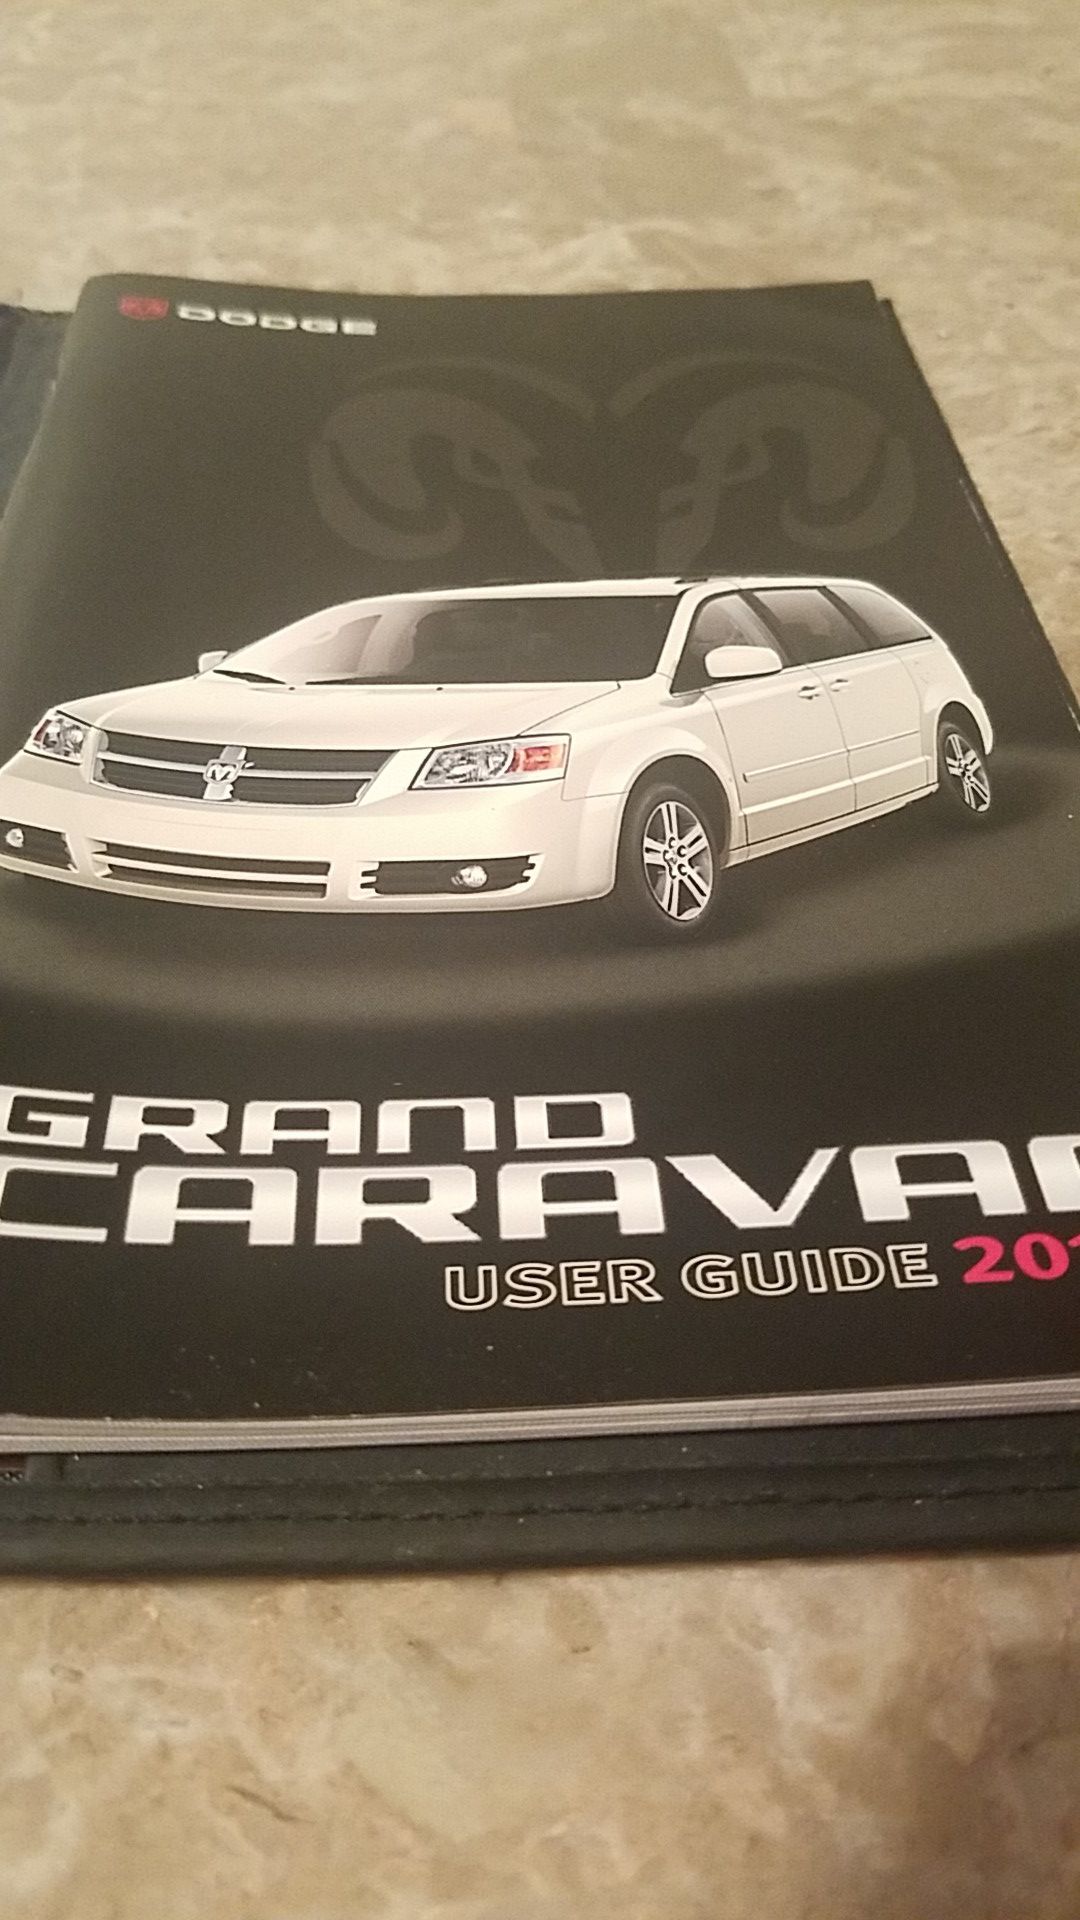 2010 Dodge Grand Caravan user guide